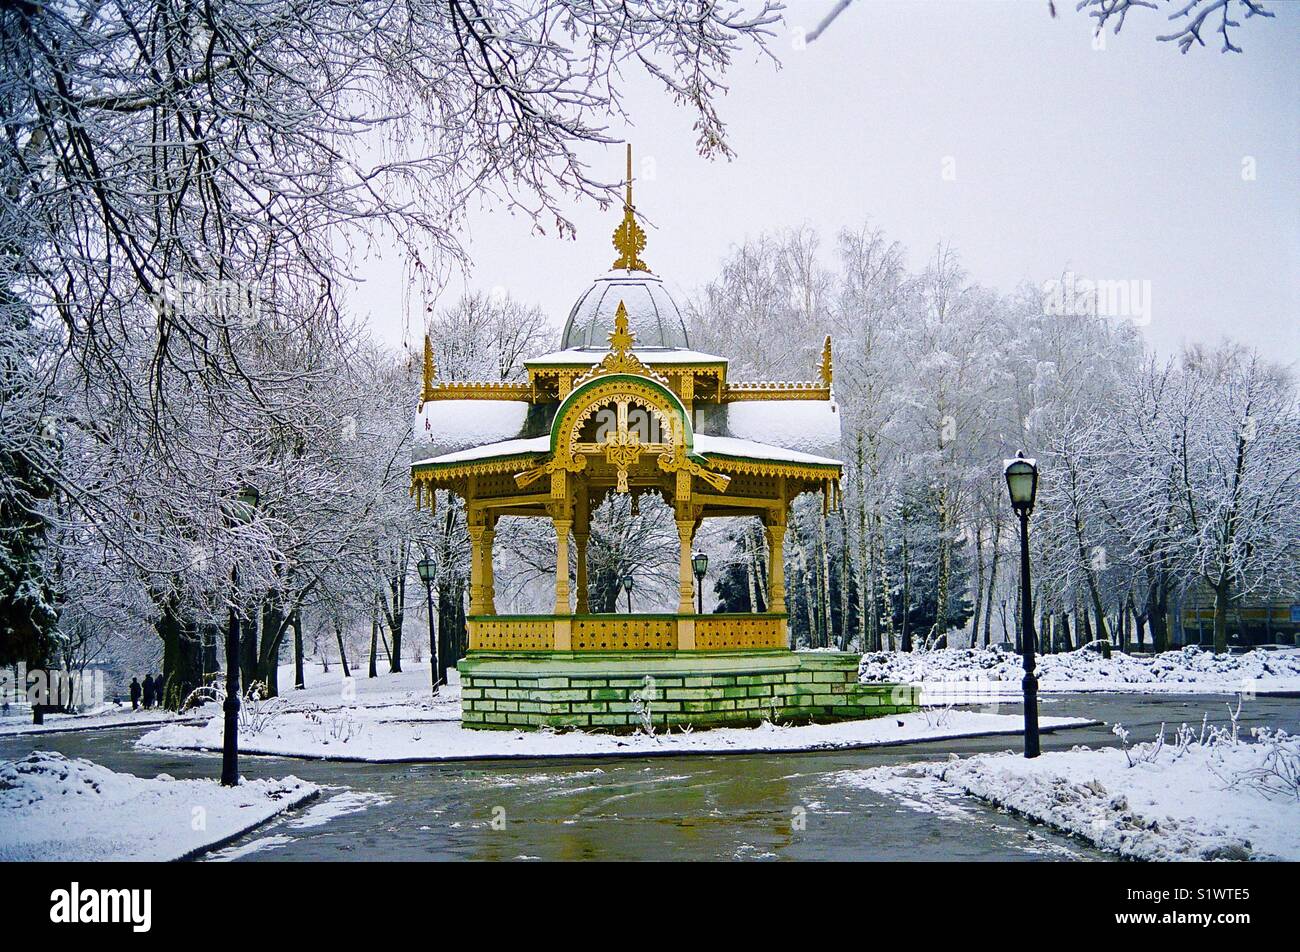 Jahrhundert Historisches Denkmal der Architektur Elegant, filigran geschnitzten Holz Pavillon Altanka, ist ein Symbol der Stadt Kharkov in der Ukraine auf einem eisigen Winter Tag in den Park. Stockfoto